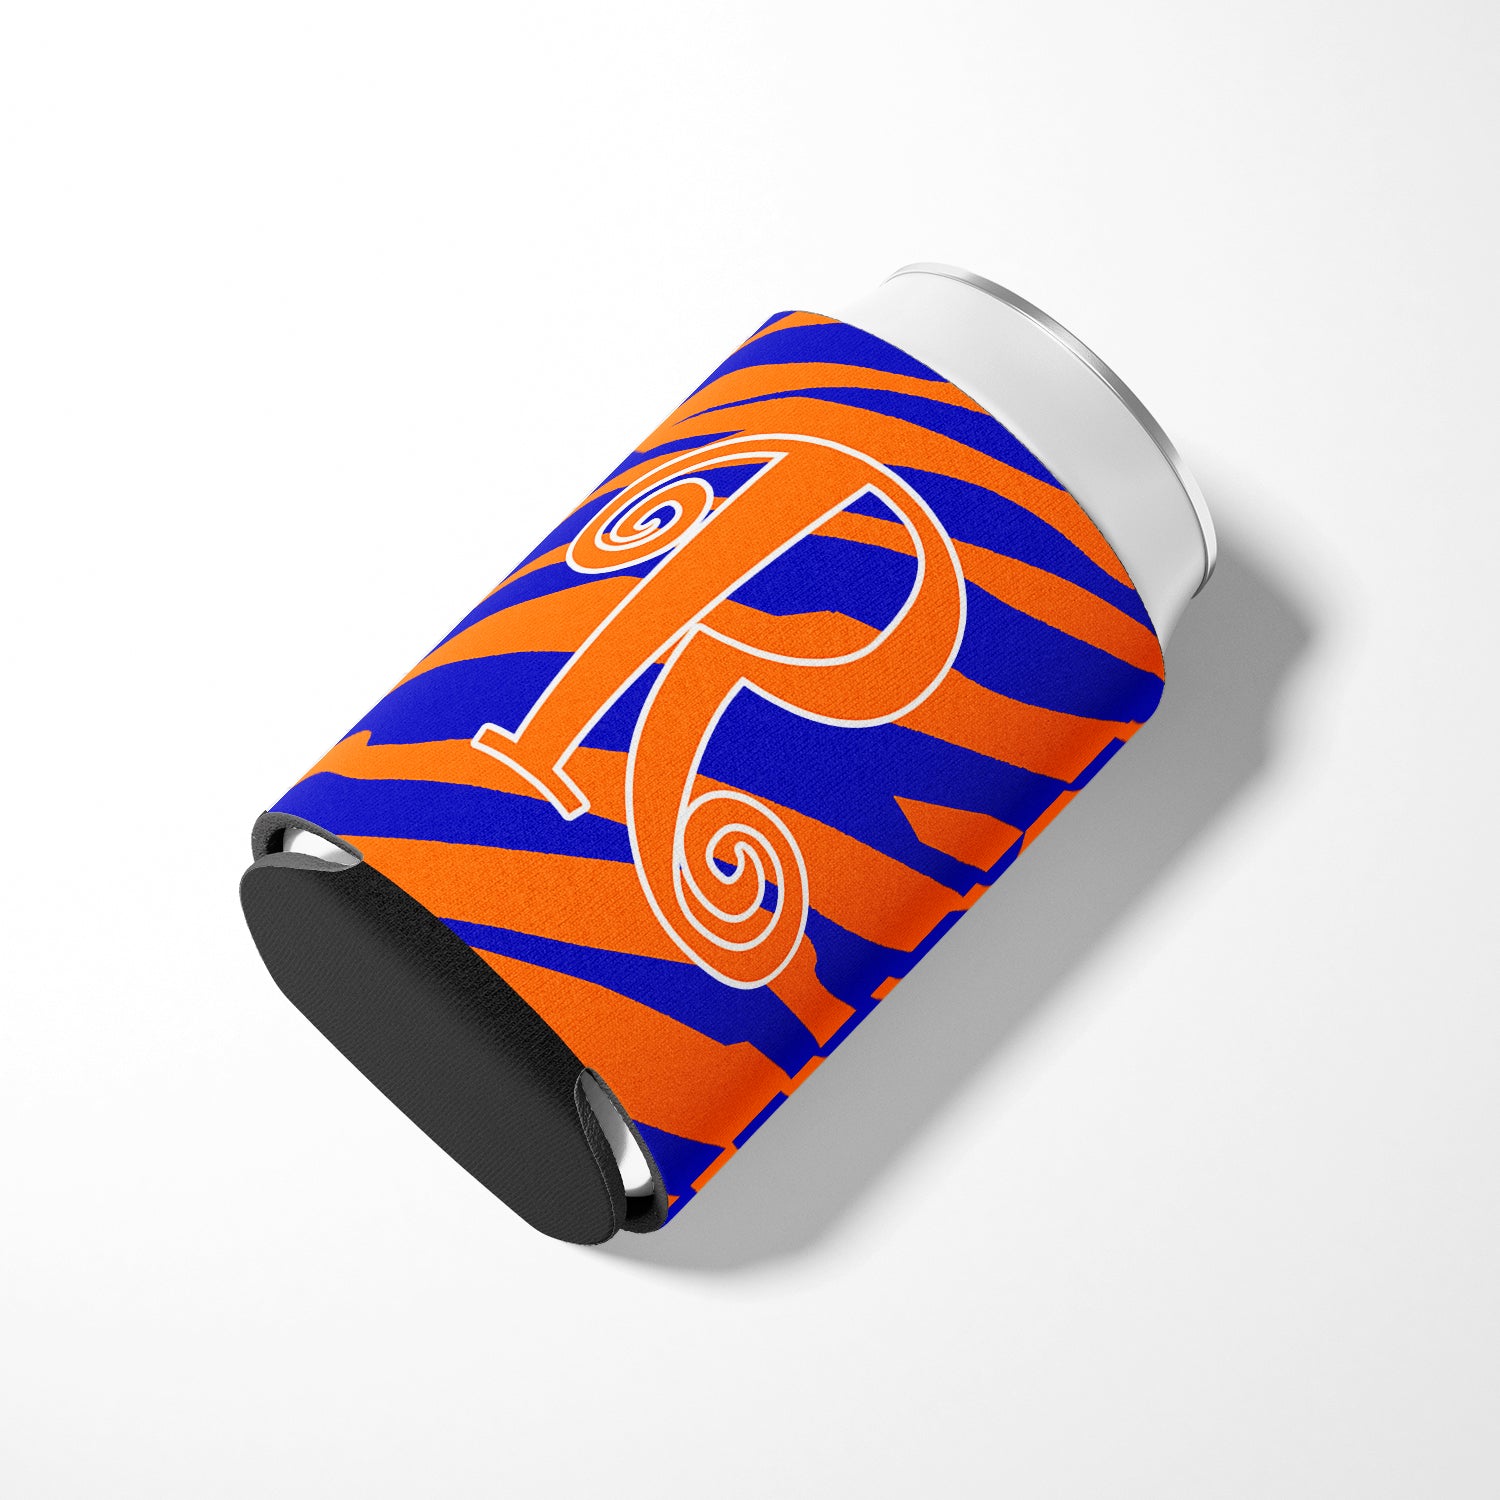 Letter R Initial Monogram - Tiger Stripe Blue and Orange Can Beverage Insulator Hugger.